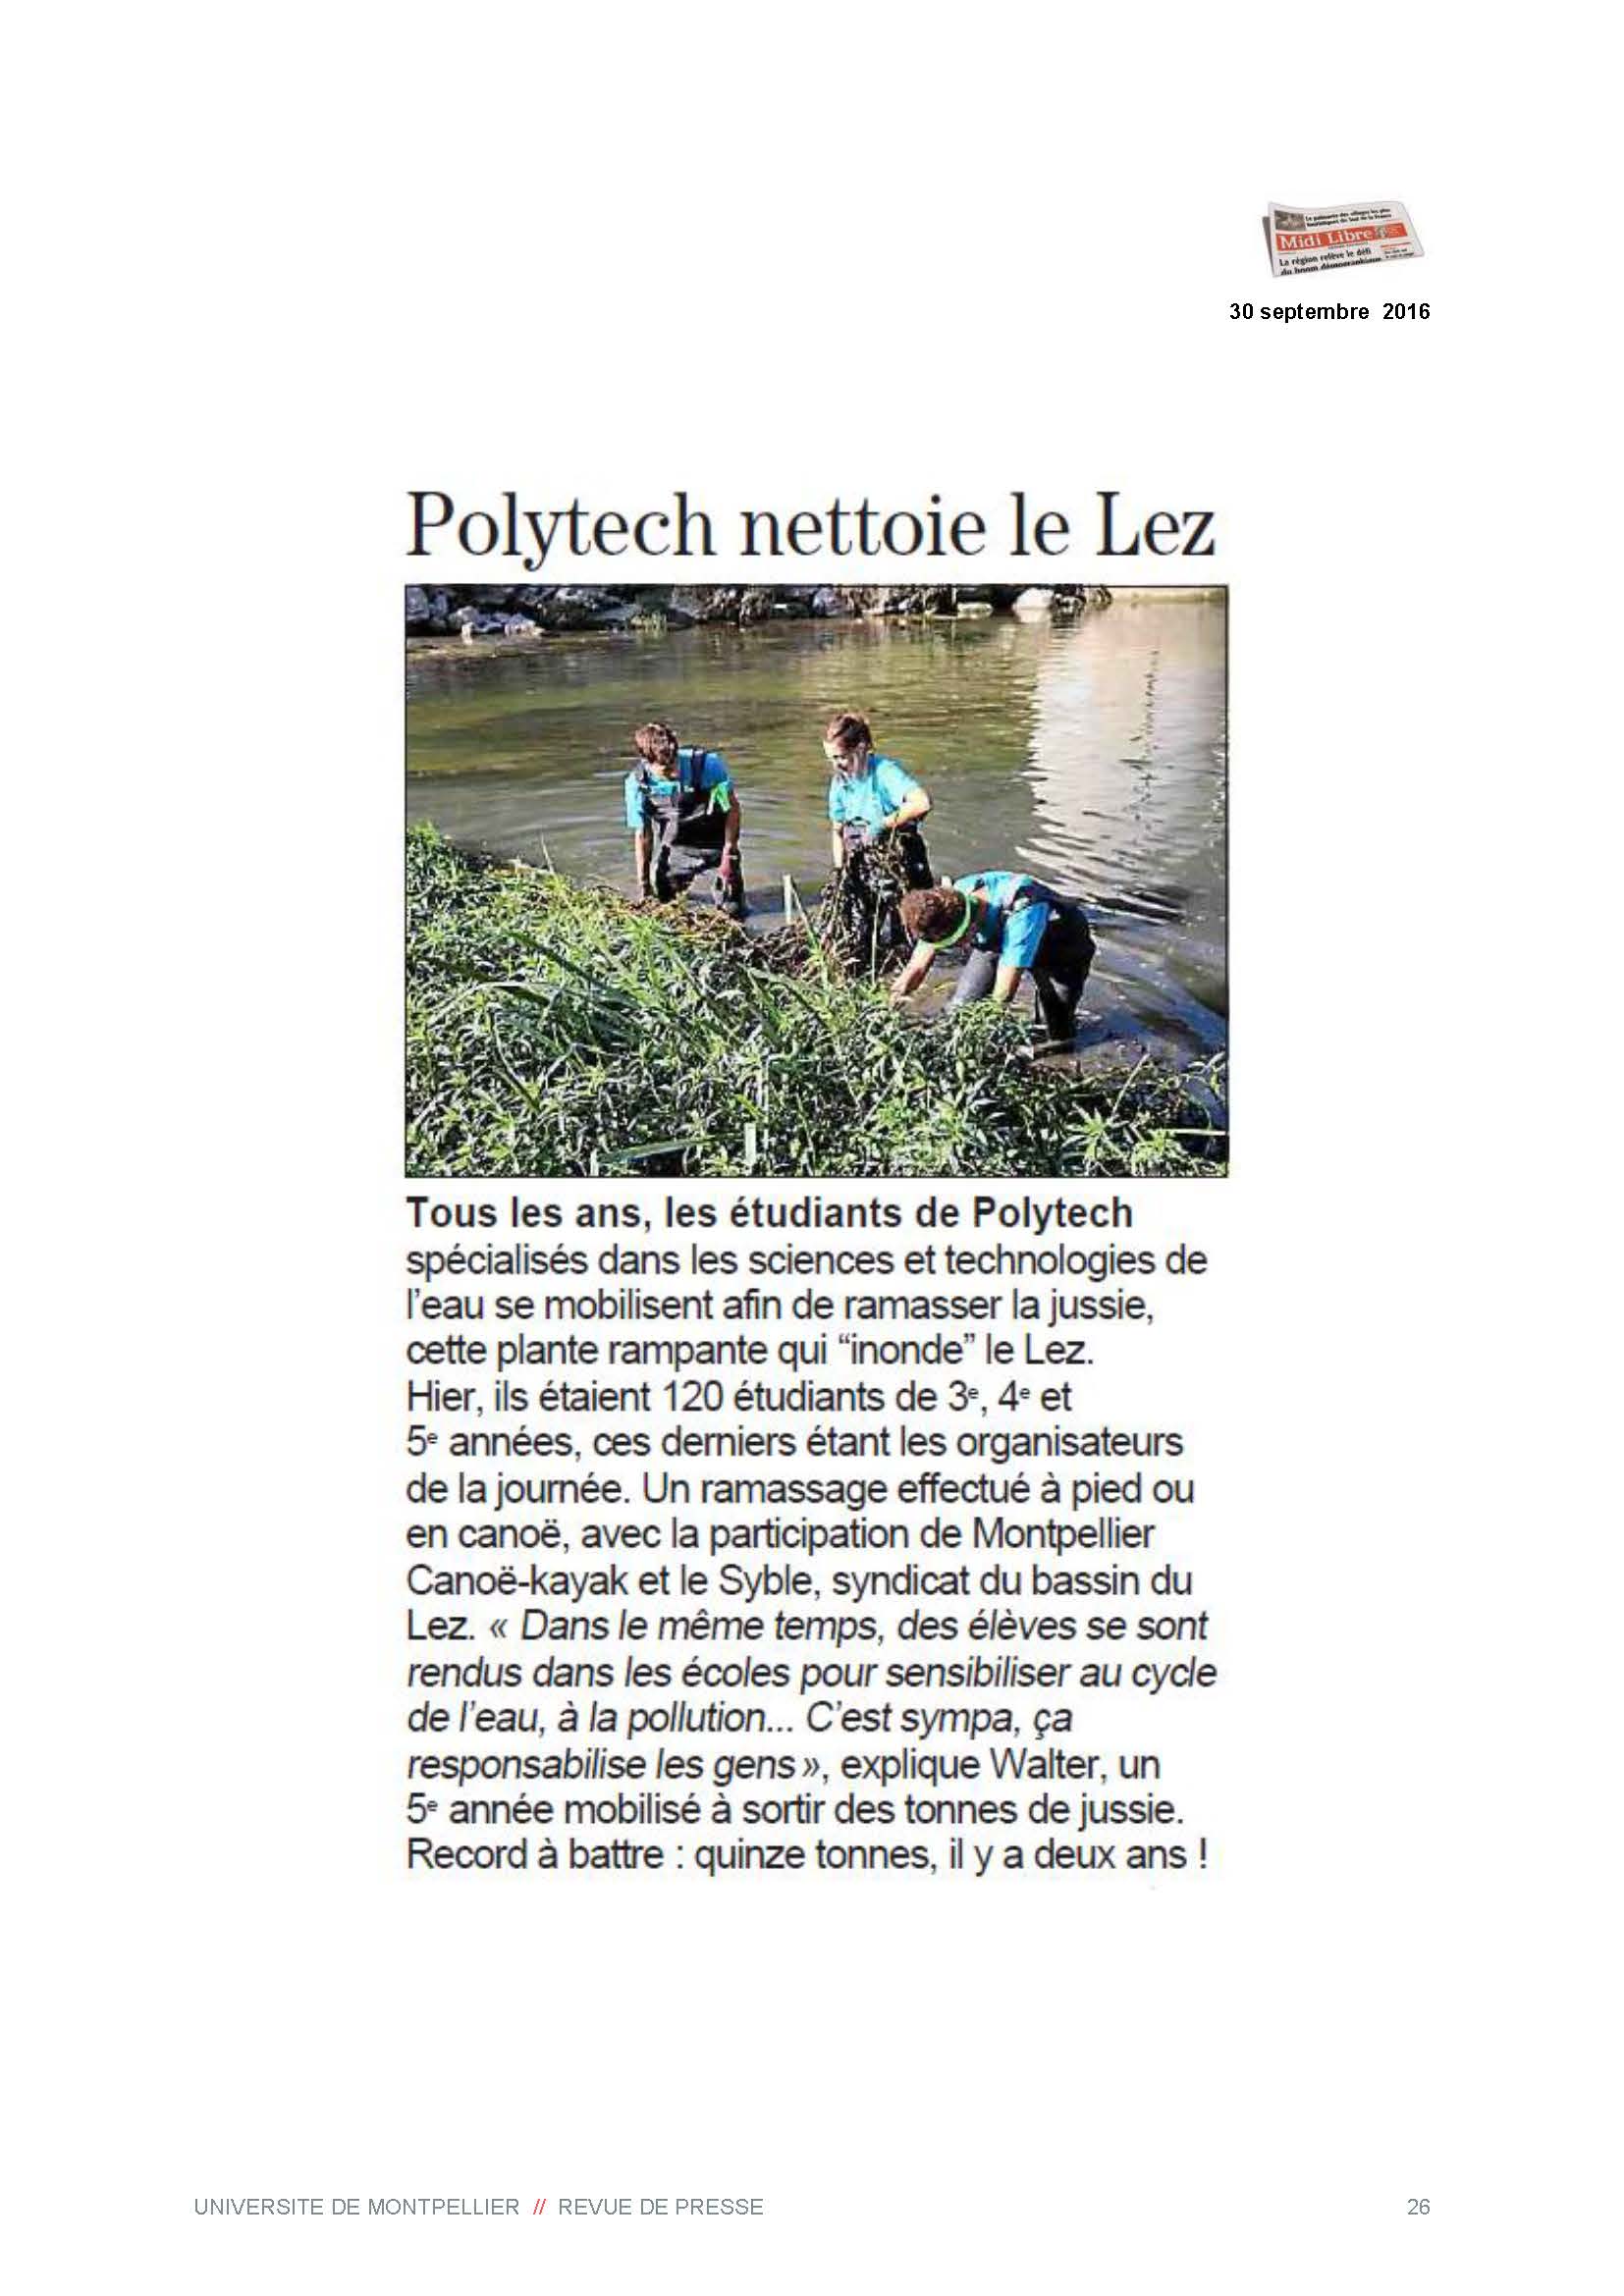 Midi Libre polytech nettoie le lez 30 09 2016